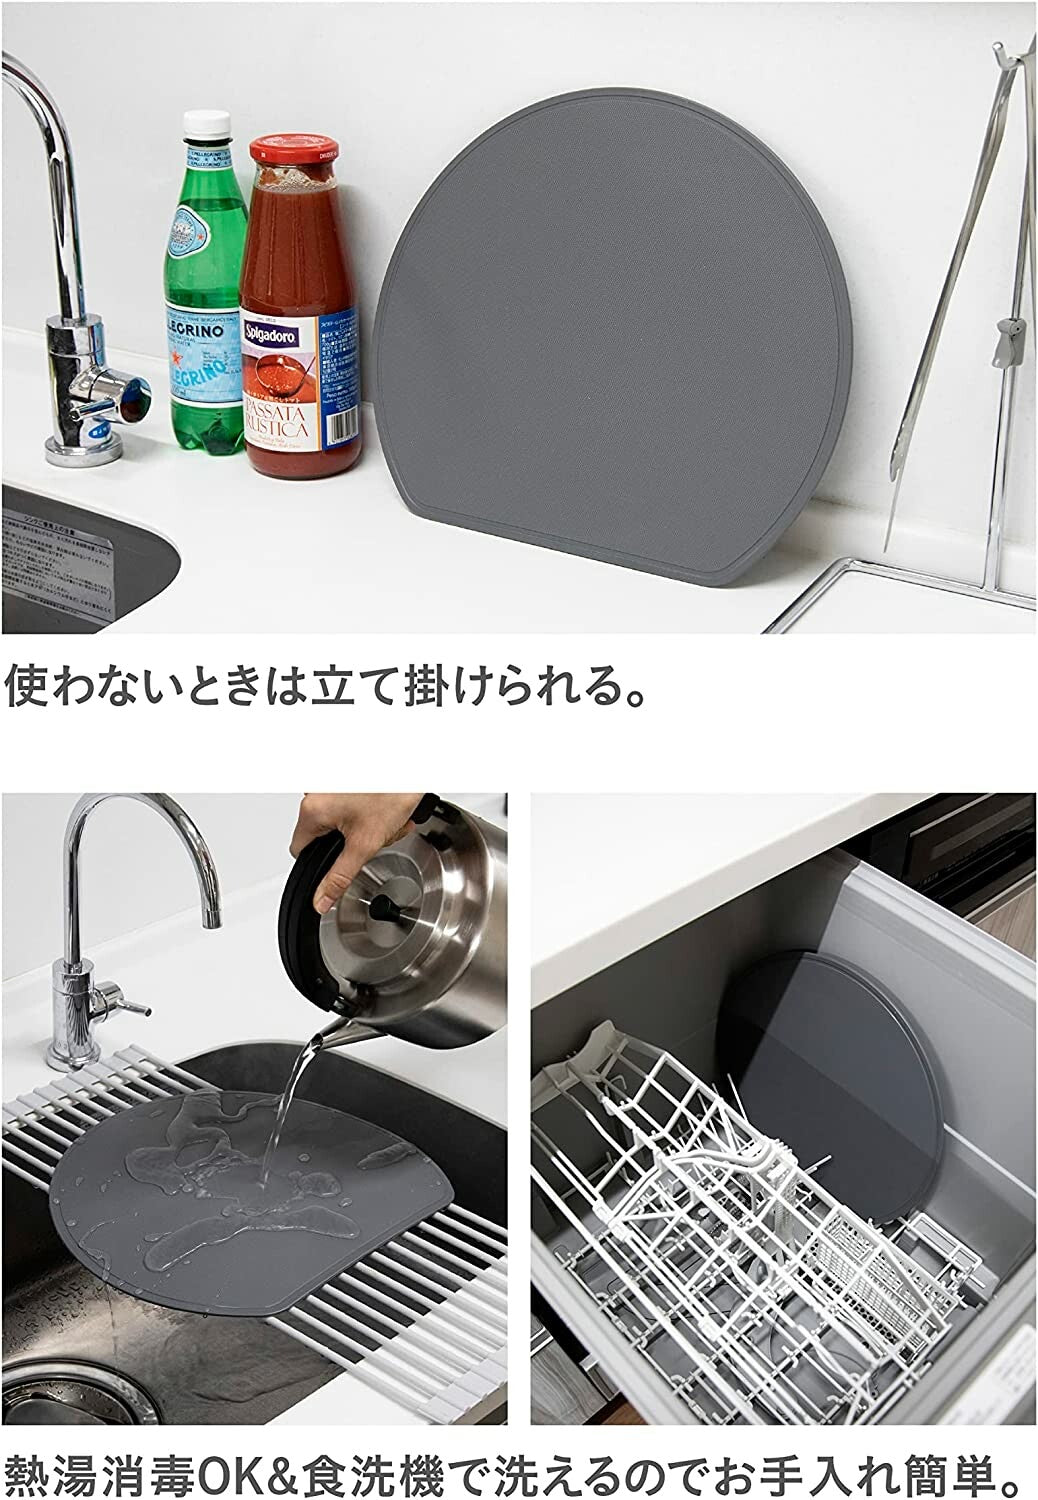 かまぼこ形まな板 熱可塑性エラストマー 食洗機対応 熱湯消毒 抗菌 グレー ダークグレー